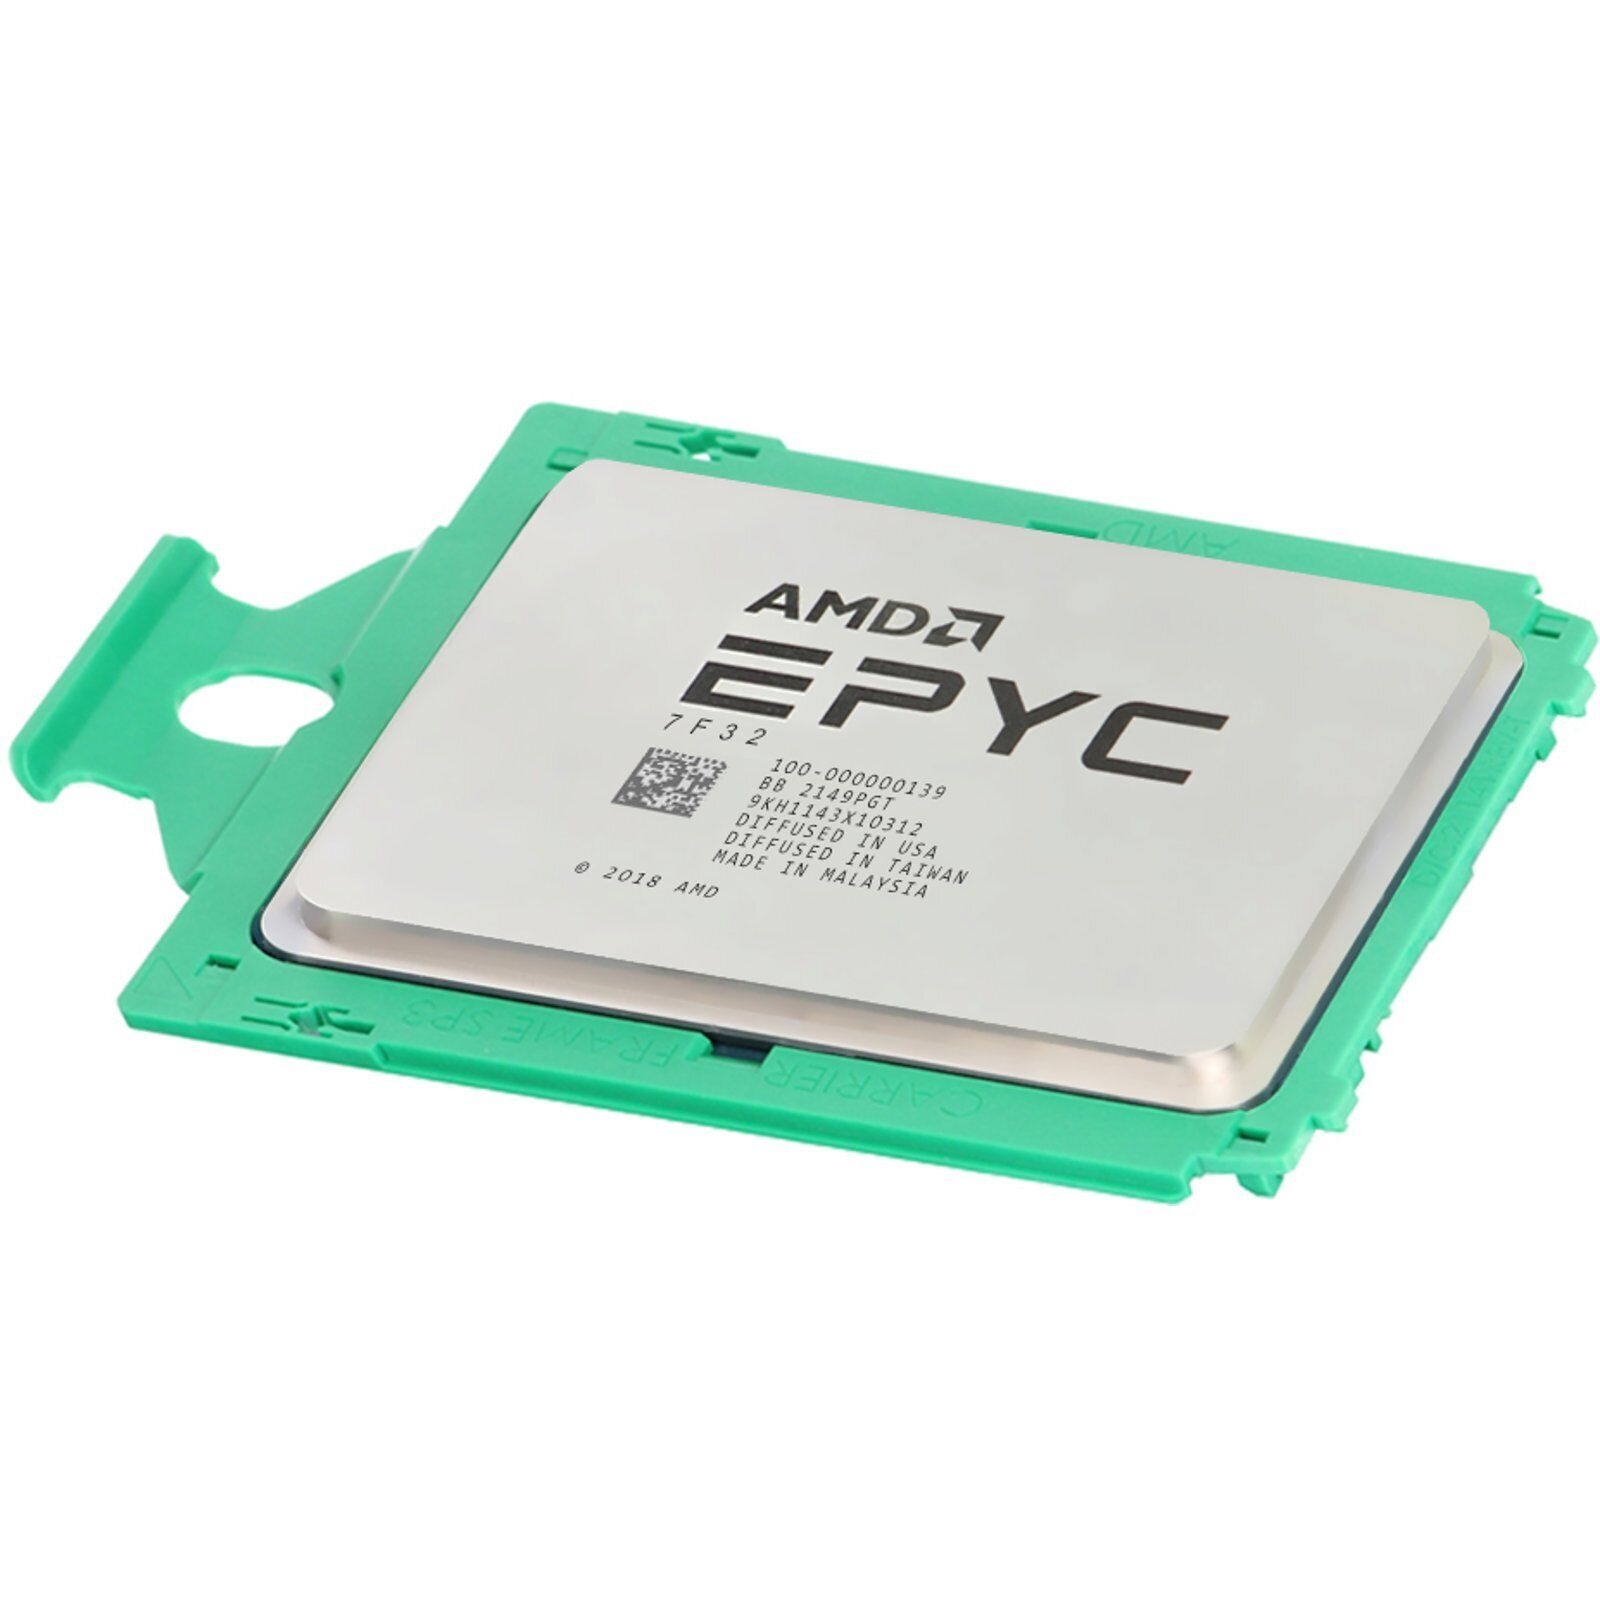 AMD EPYC 7F32 8C 3.7GHz 128M DDR4-3200 180W (Unlocked) (7F32-OSTK)